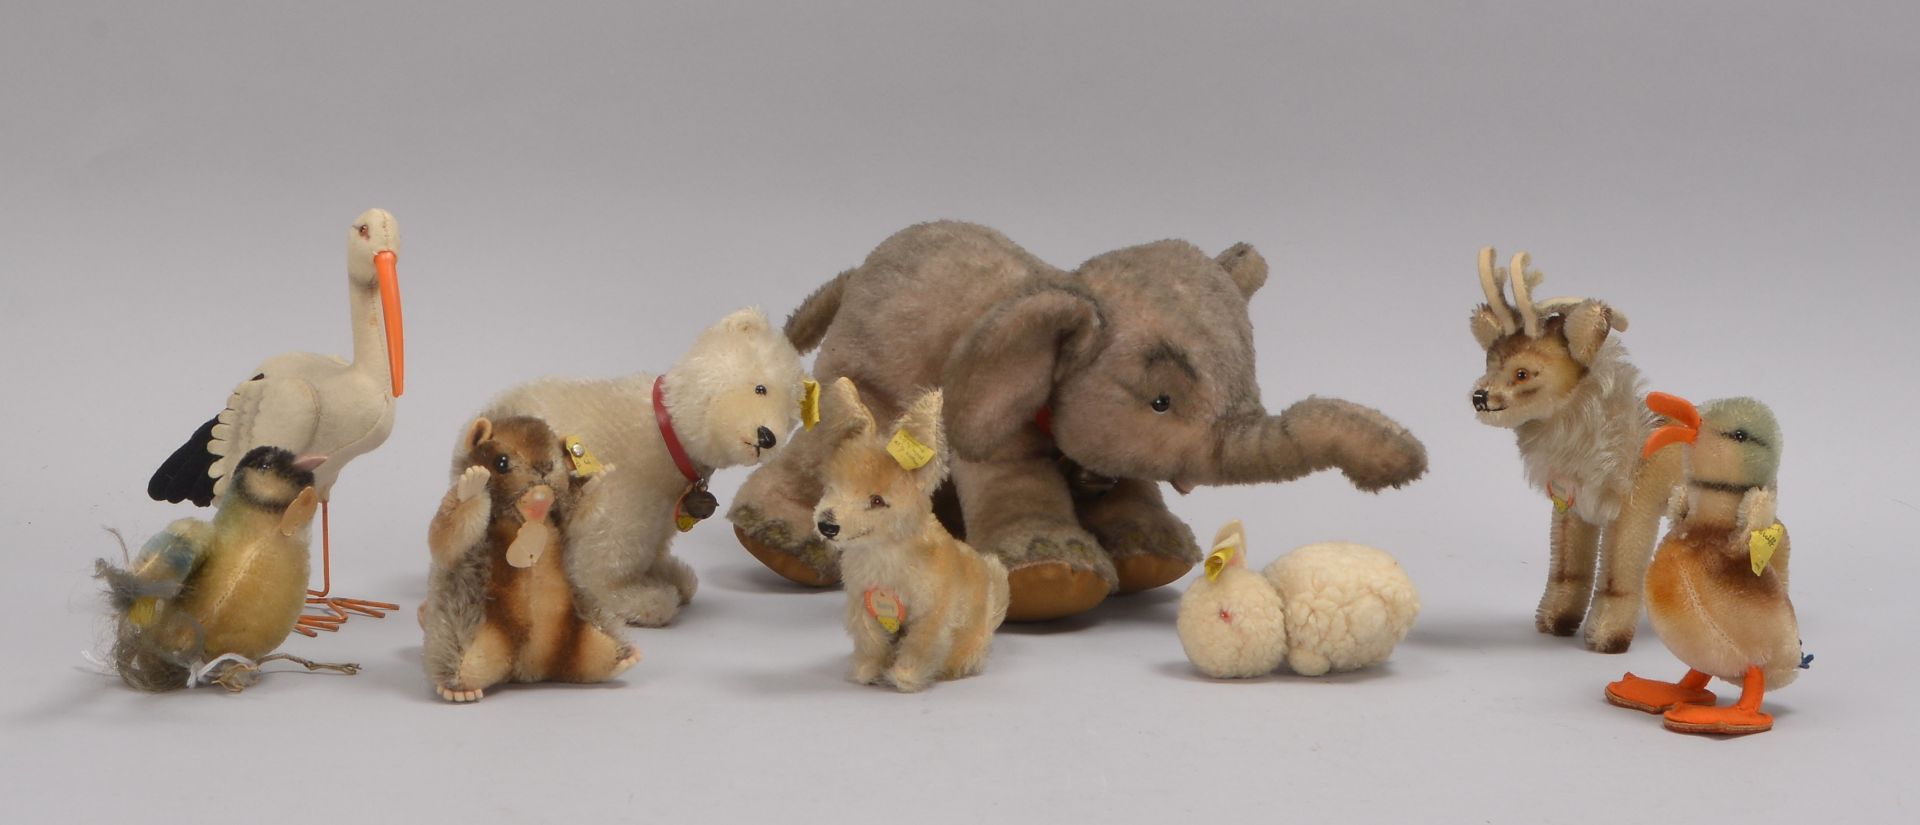 Kleine Sammlung Steiff-Sammlerfiguren, unterschiedliche Tiermotive, verschiedene Größen und Zustände